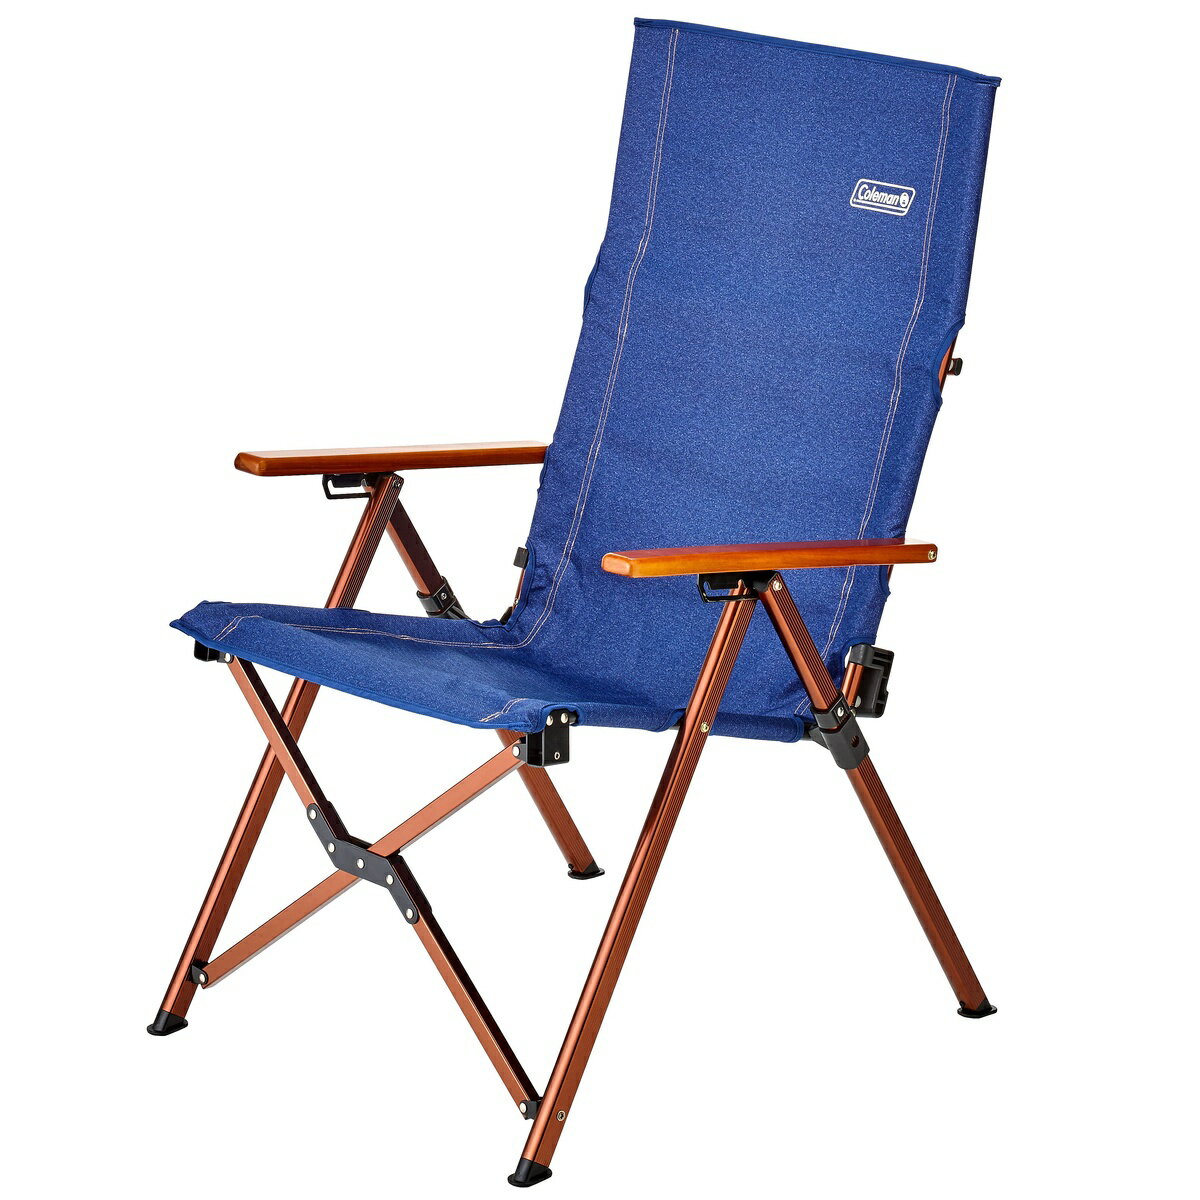 ● コールマン(COLEMAN) レイチェア(デニム) キャンプ用品 ファミリーチェア 椅子 デニム 2000036518